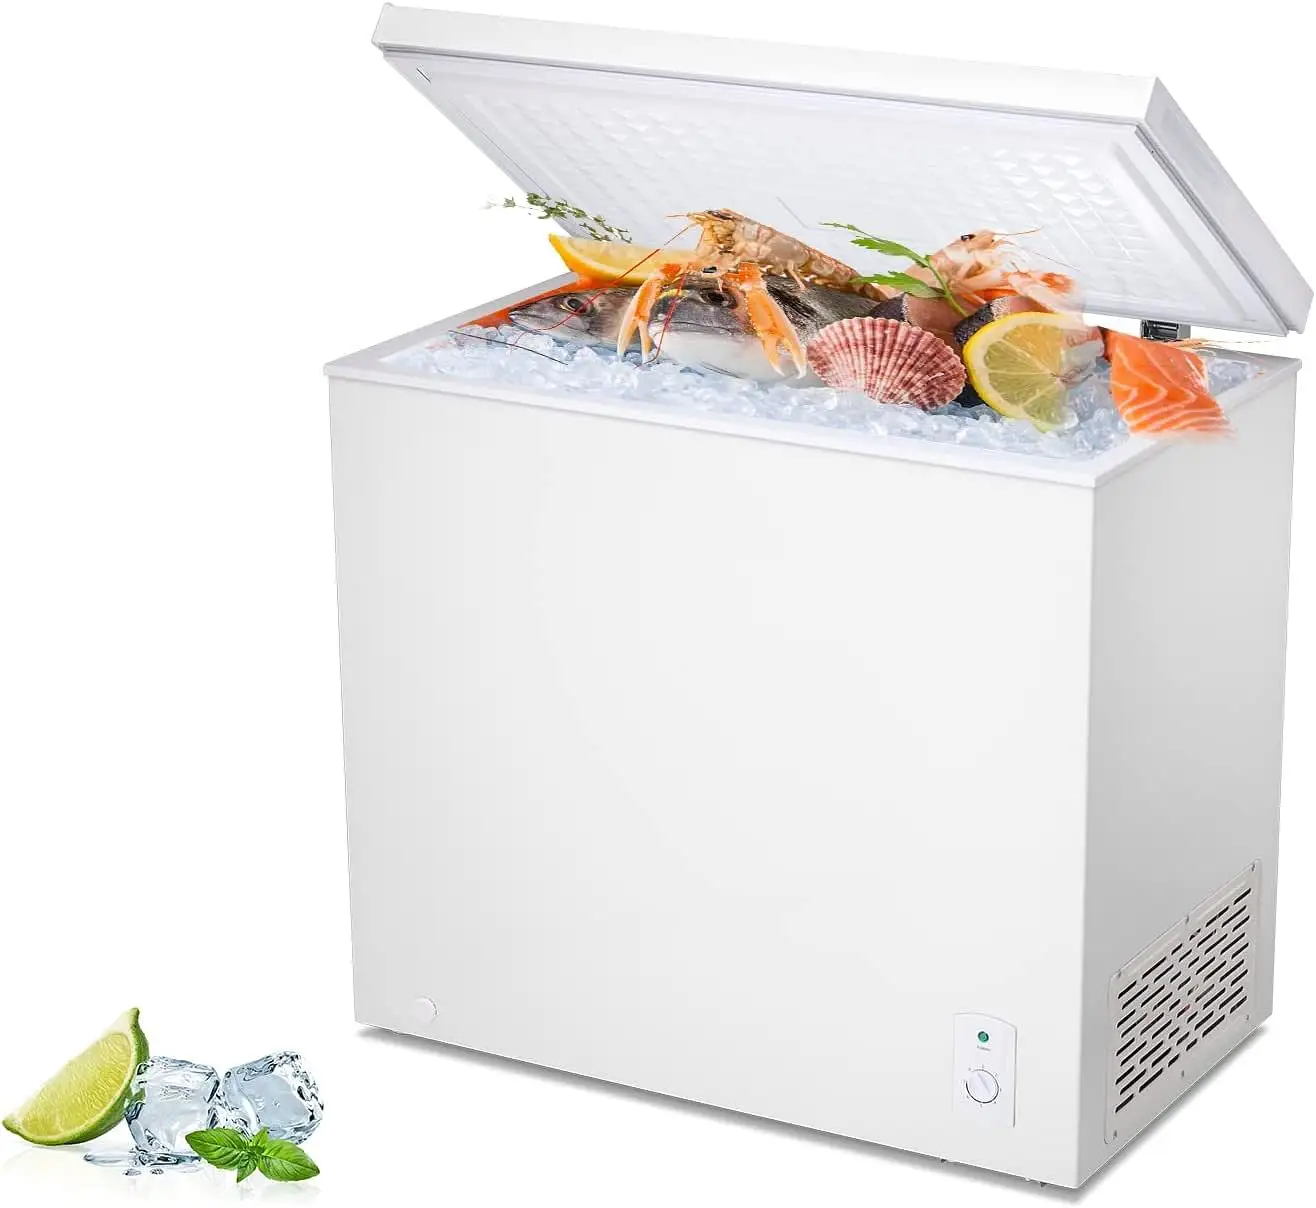 SPM fabbrica all'ingrosso elettrico congelatori a pozzetto frigoriferi frigorifero una porta frigoriferi commerciali